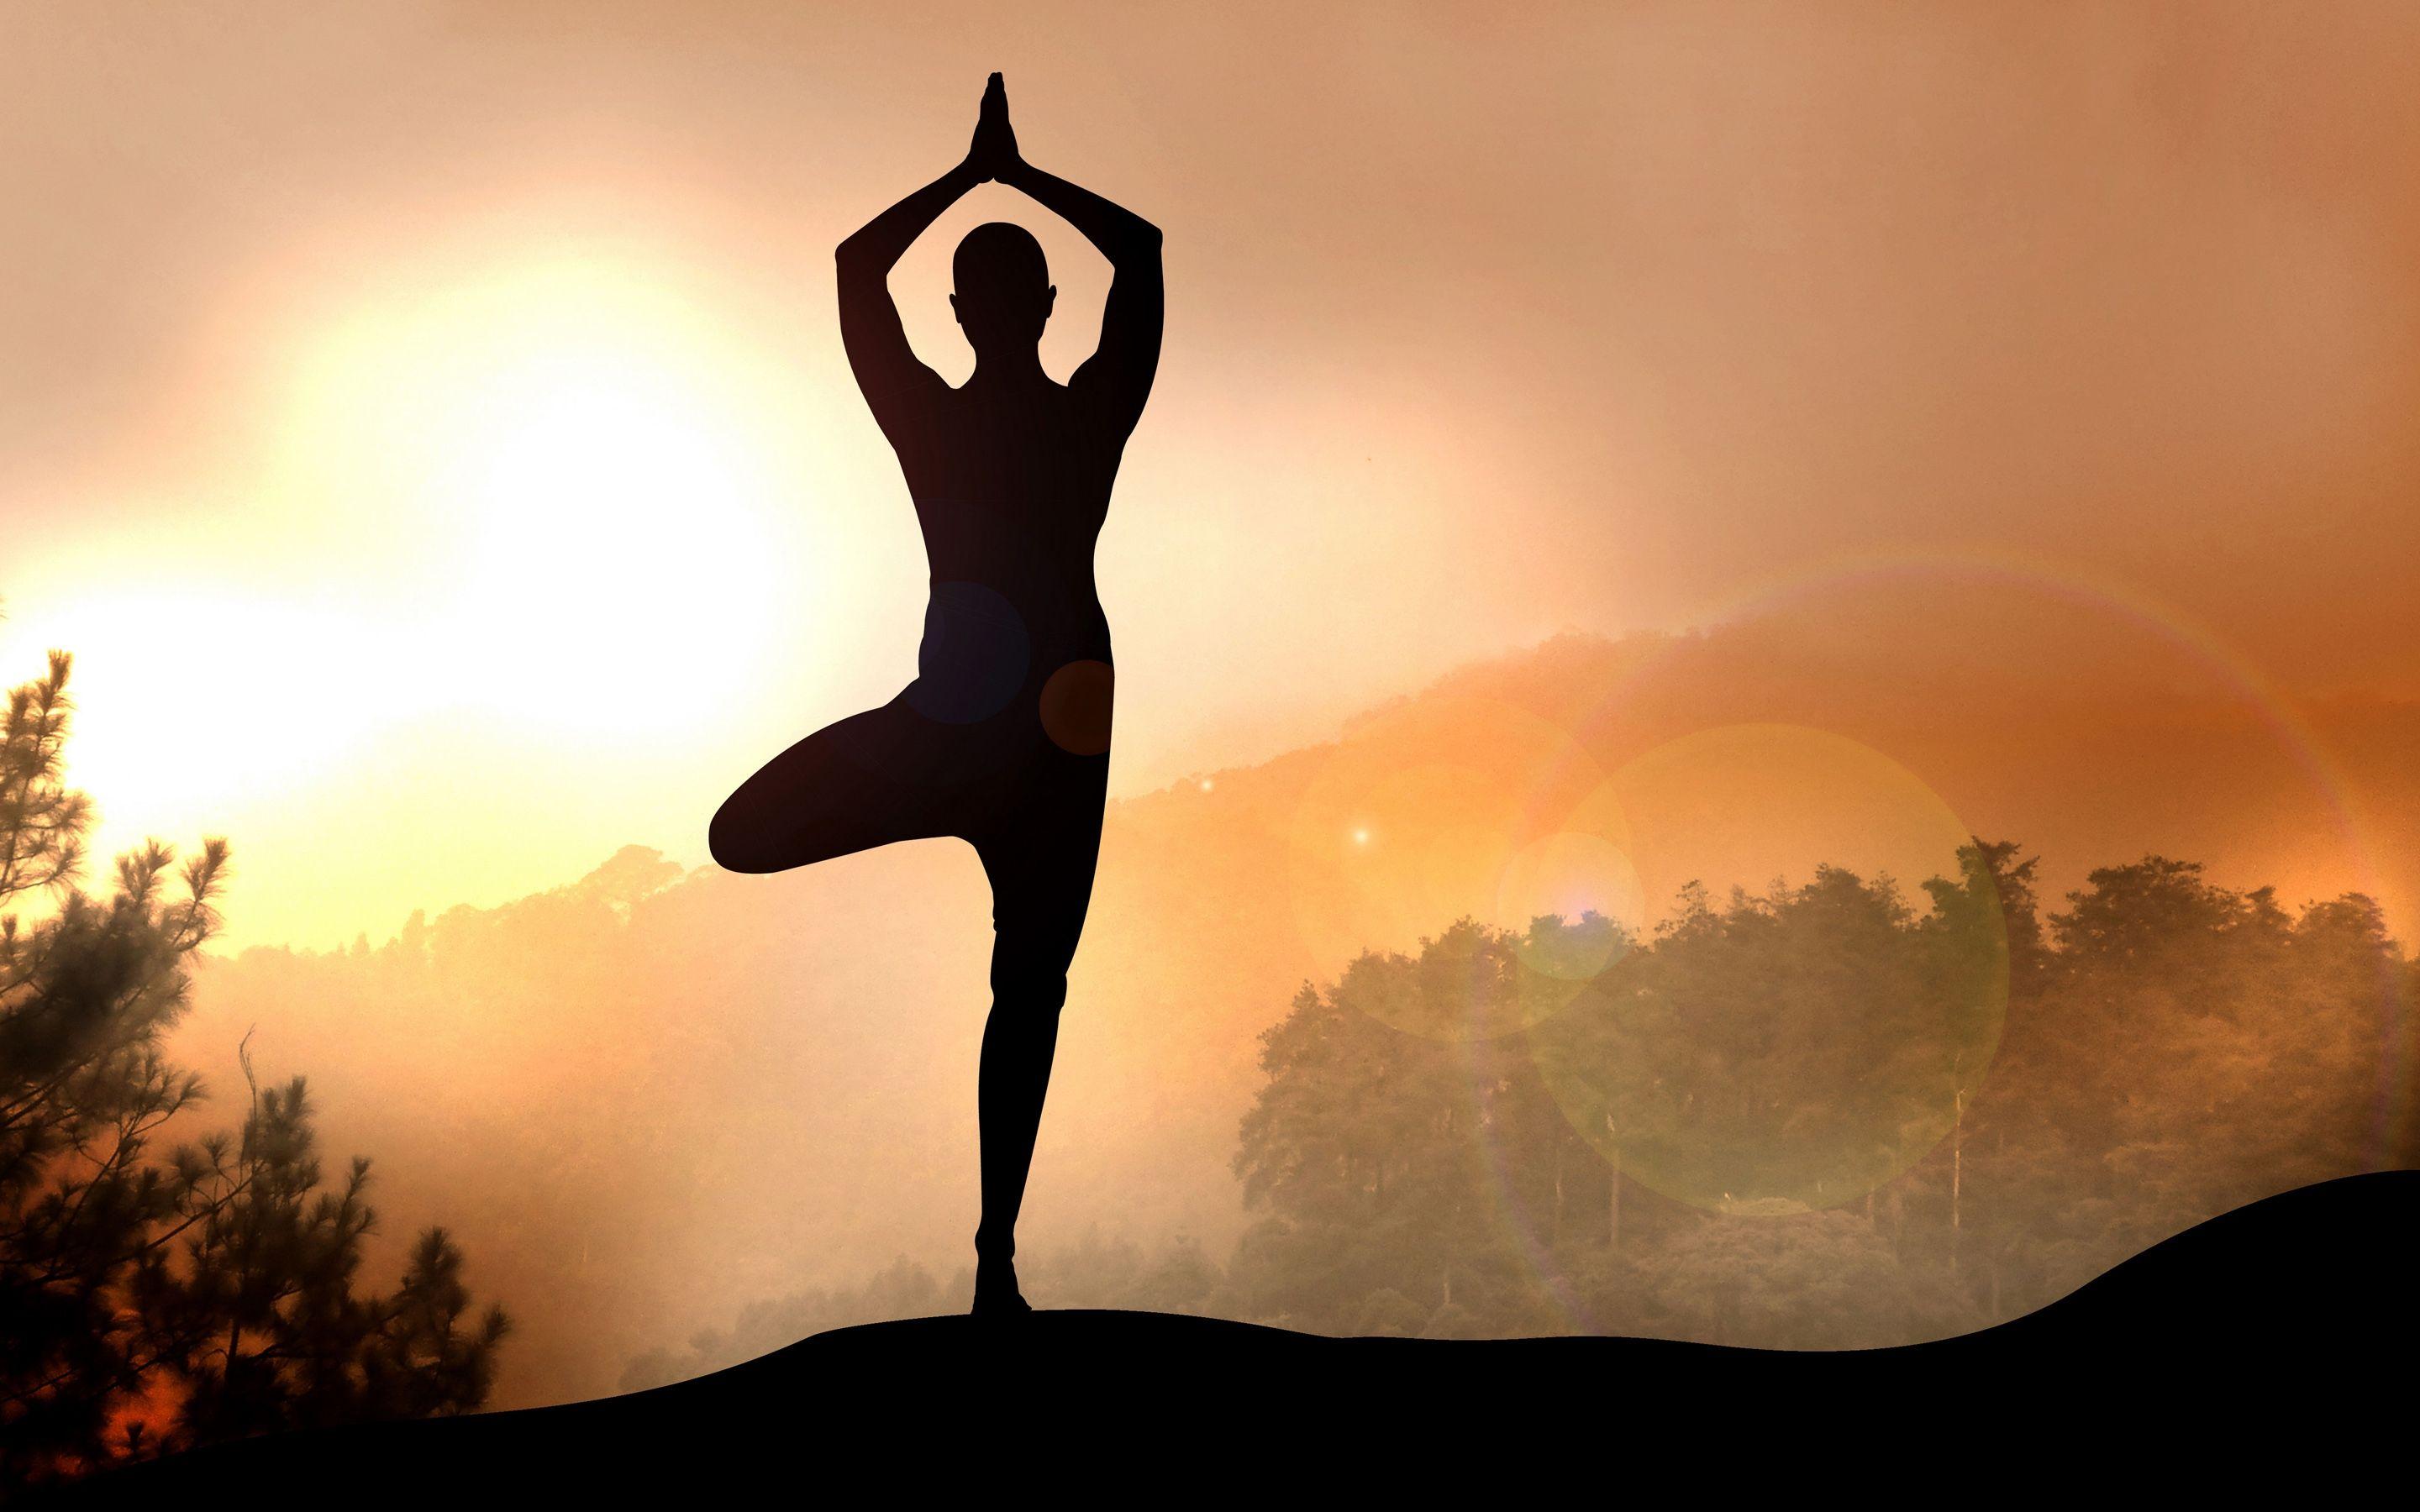 Những hình ảnh yoga đẹp mắt sẽ giúp bạn tận hưởng toàn bộ trải nghiệm của môn yoga. Tự tin và thư giãn hơn với những bài tập yoga, cảm nhận được sự thanh lịch, êm ái và duyên dáng.